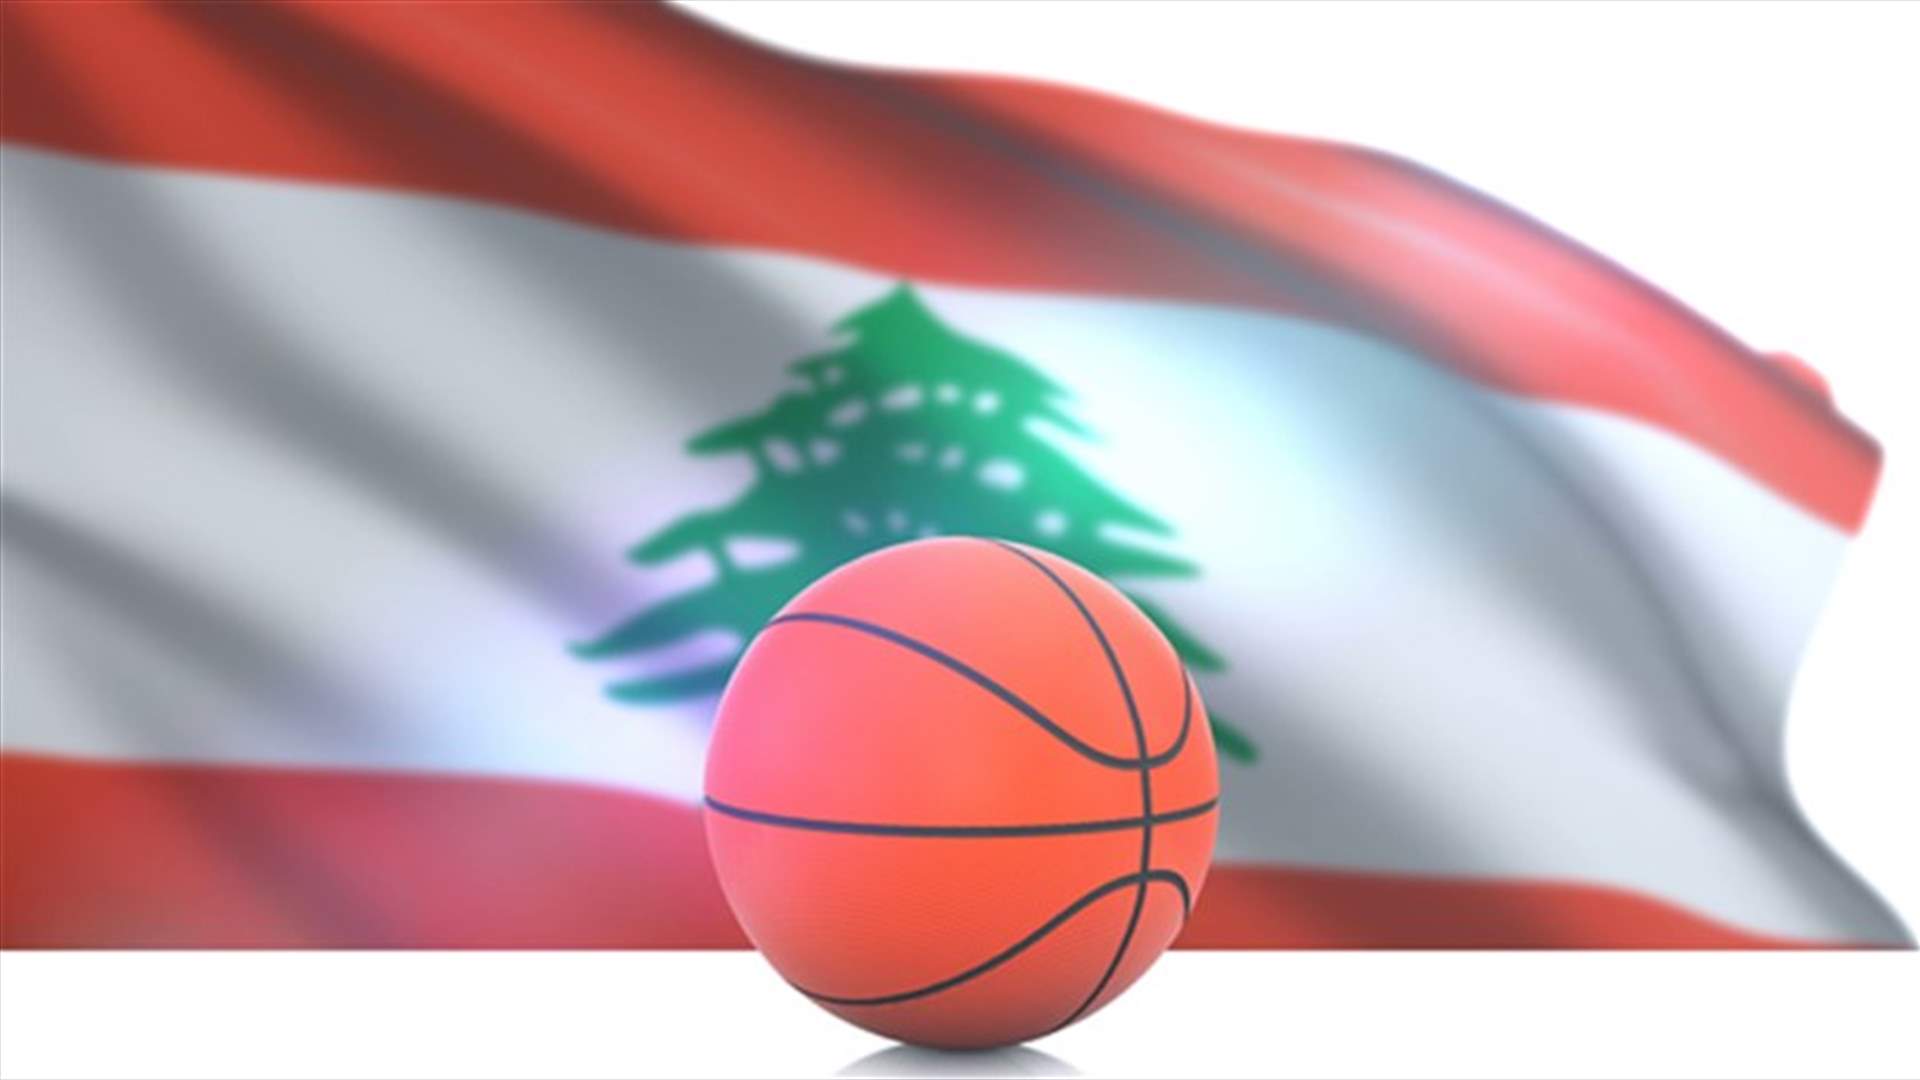 منتخب لبنان لكرة السلة للناشئين يتأهل الى كأس العالم بعد فوزه على كوريا الجنوبية